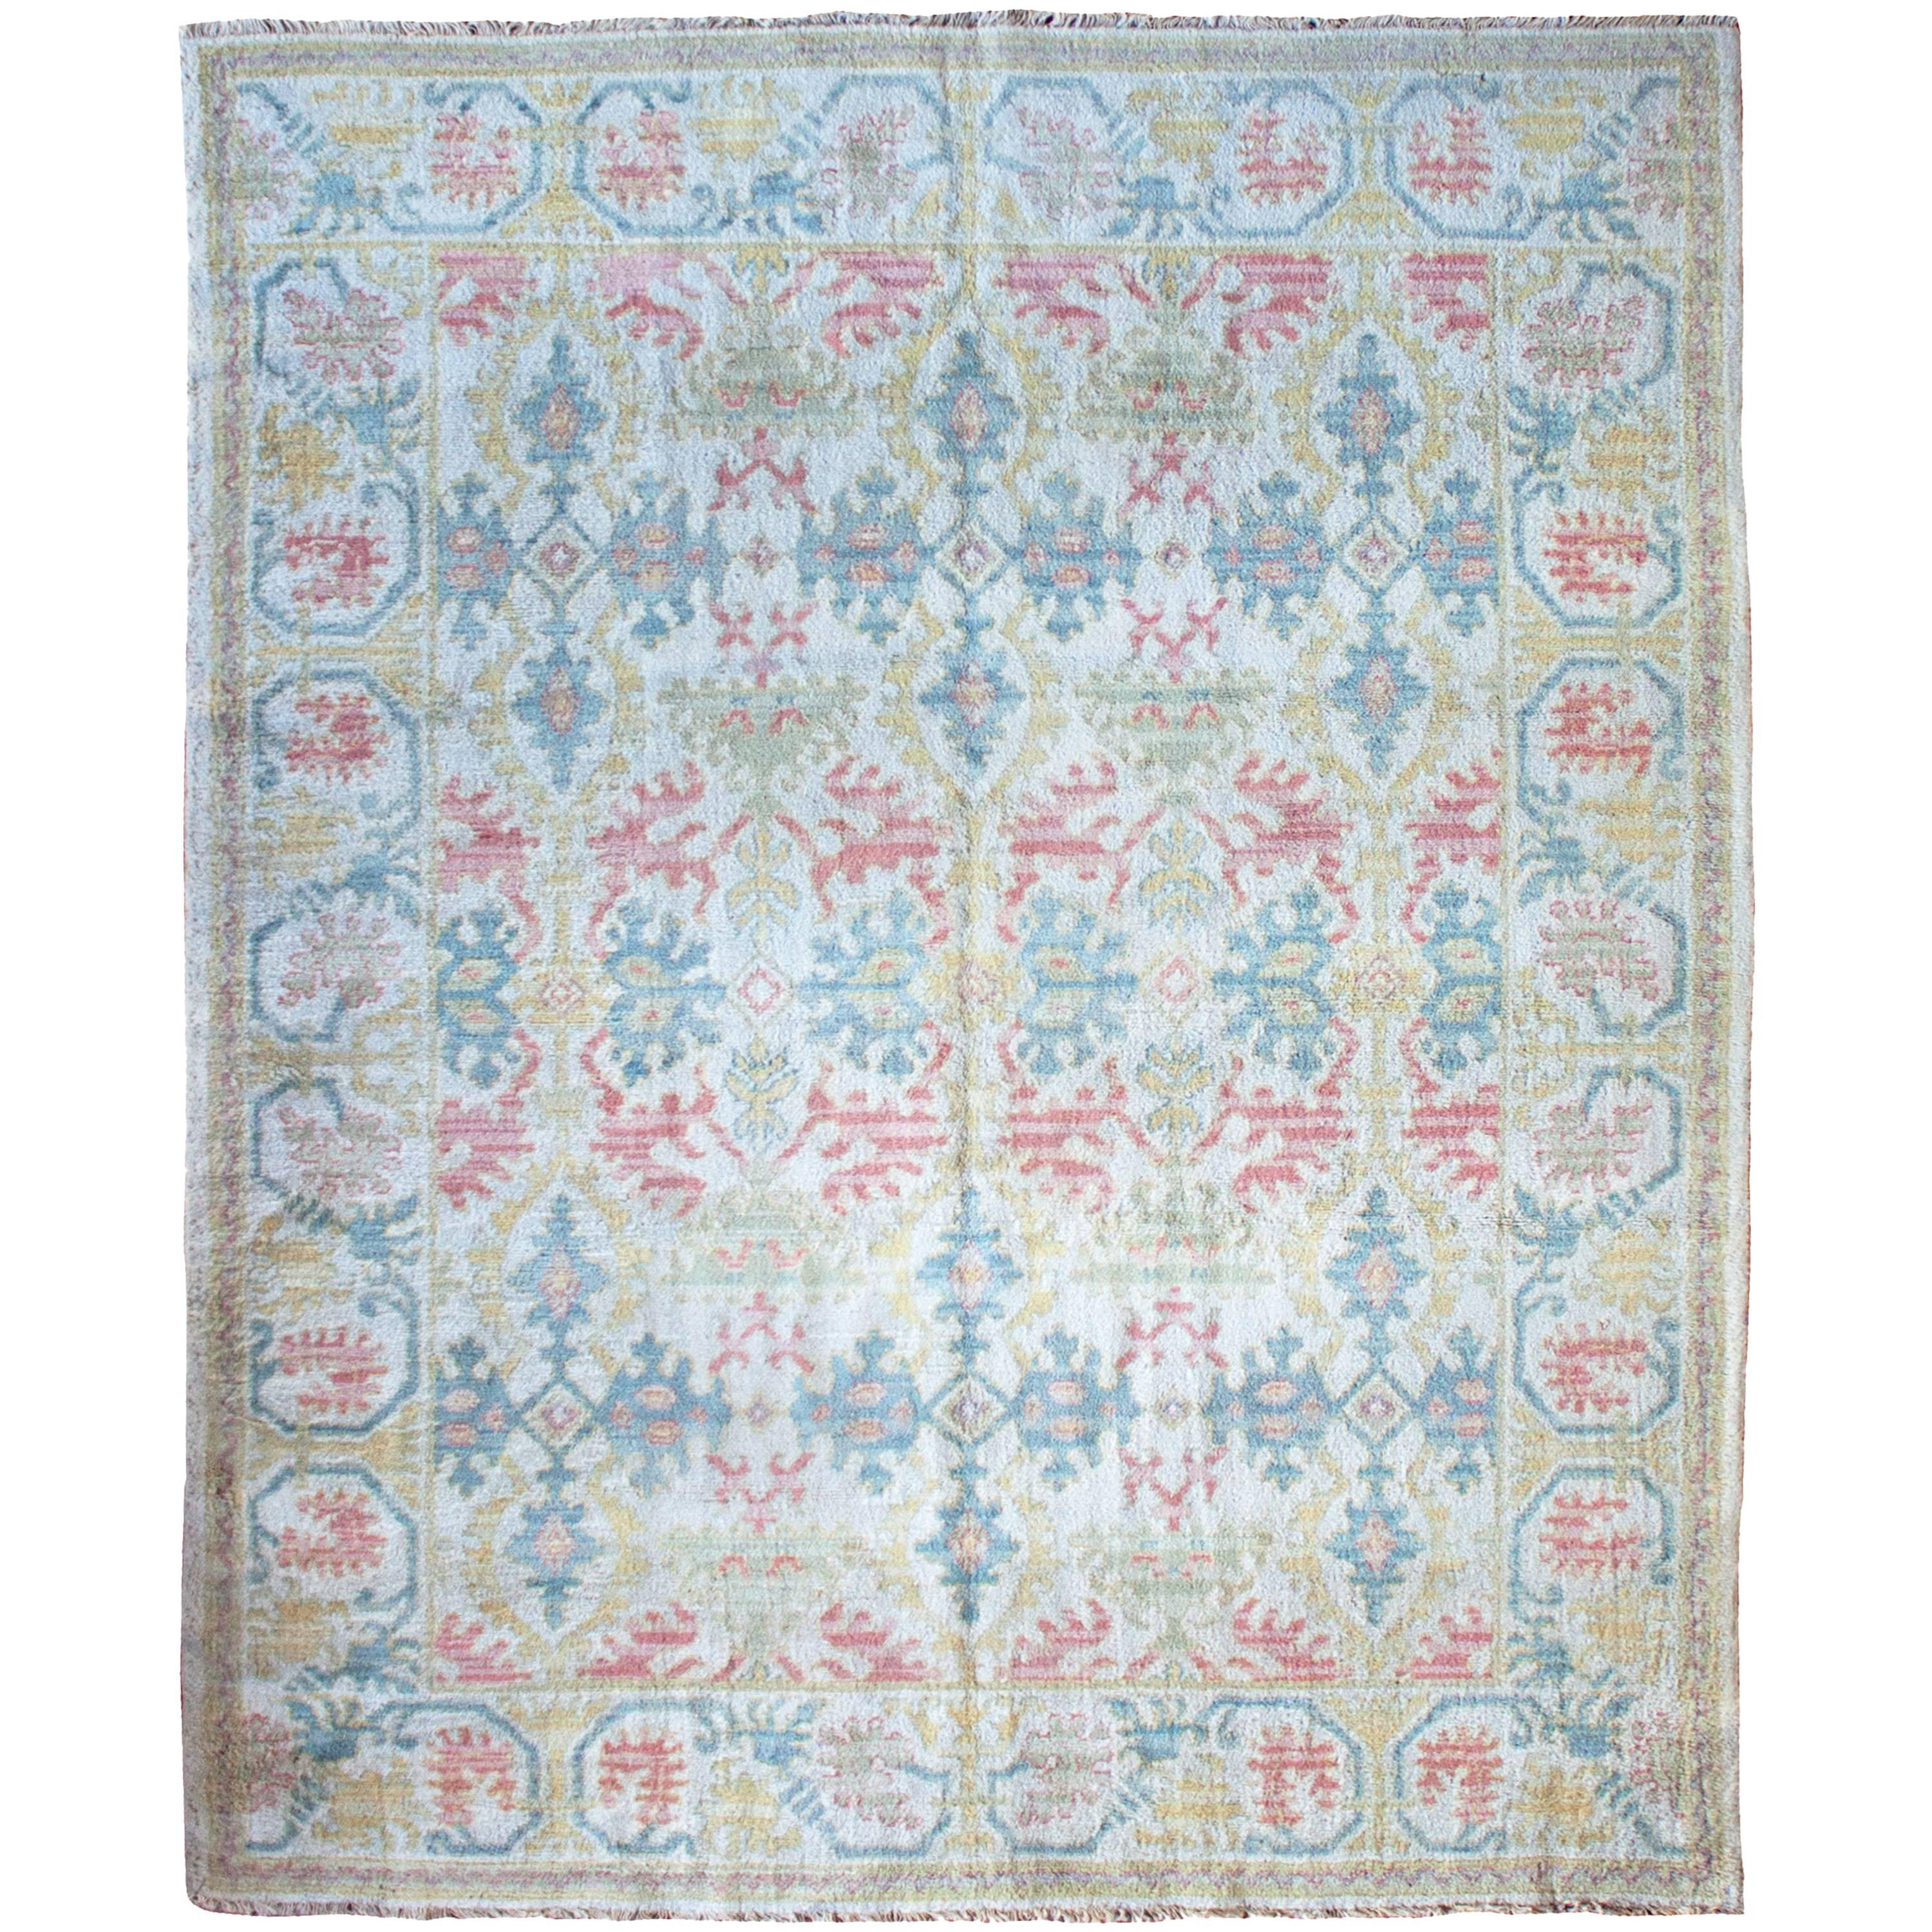 Antique Cuenca Spanish Carpet For Sale